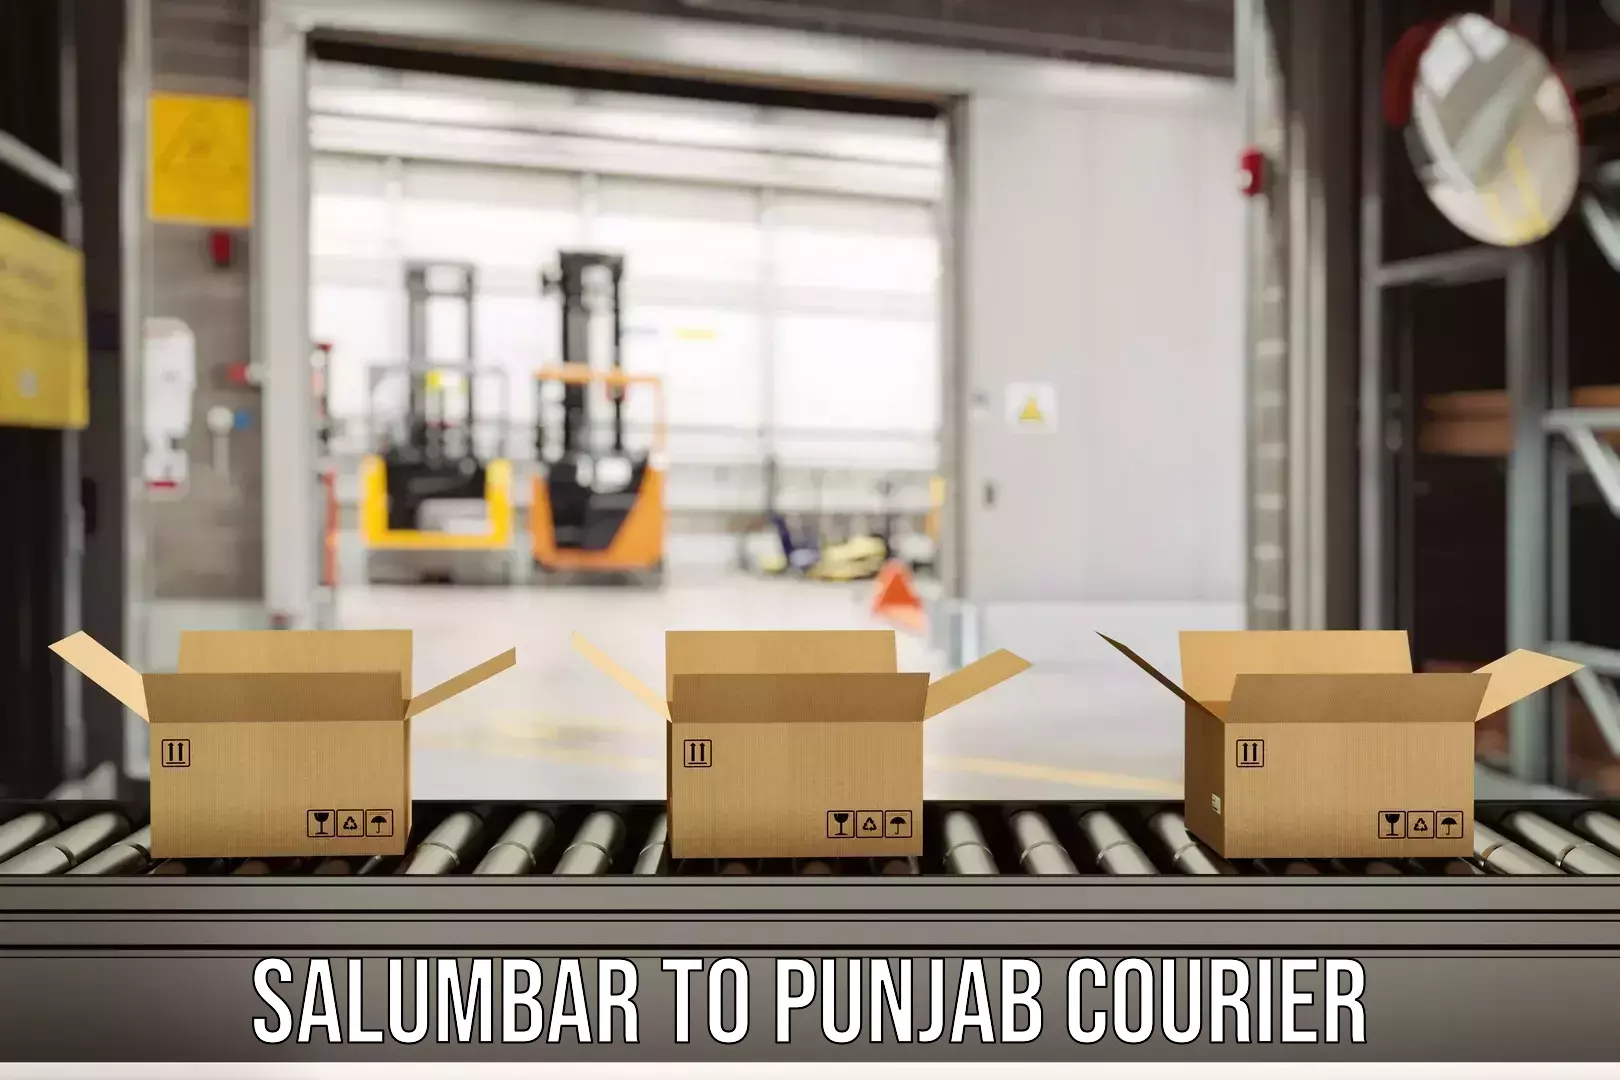 Multi-city courier Salumbar to Punjab